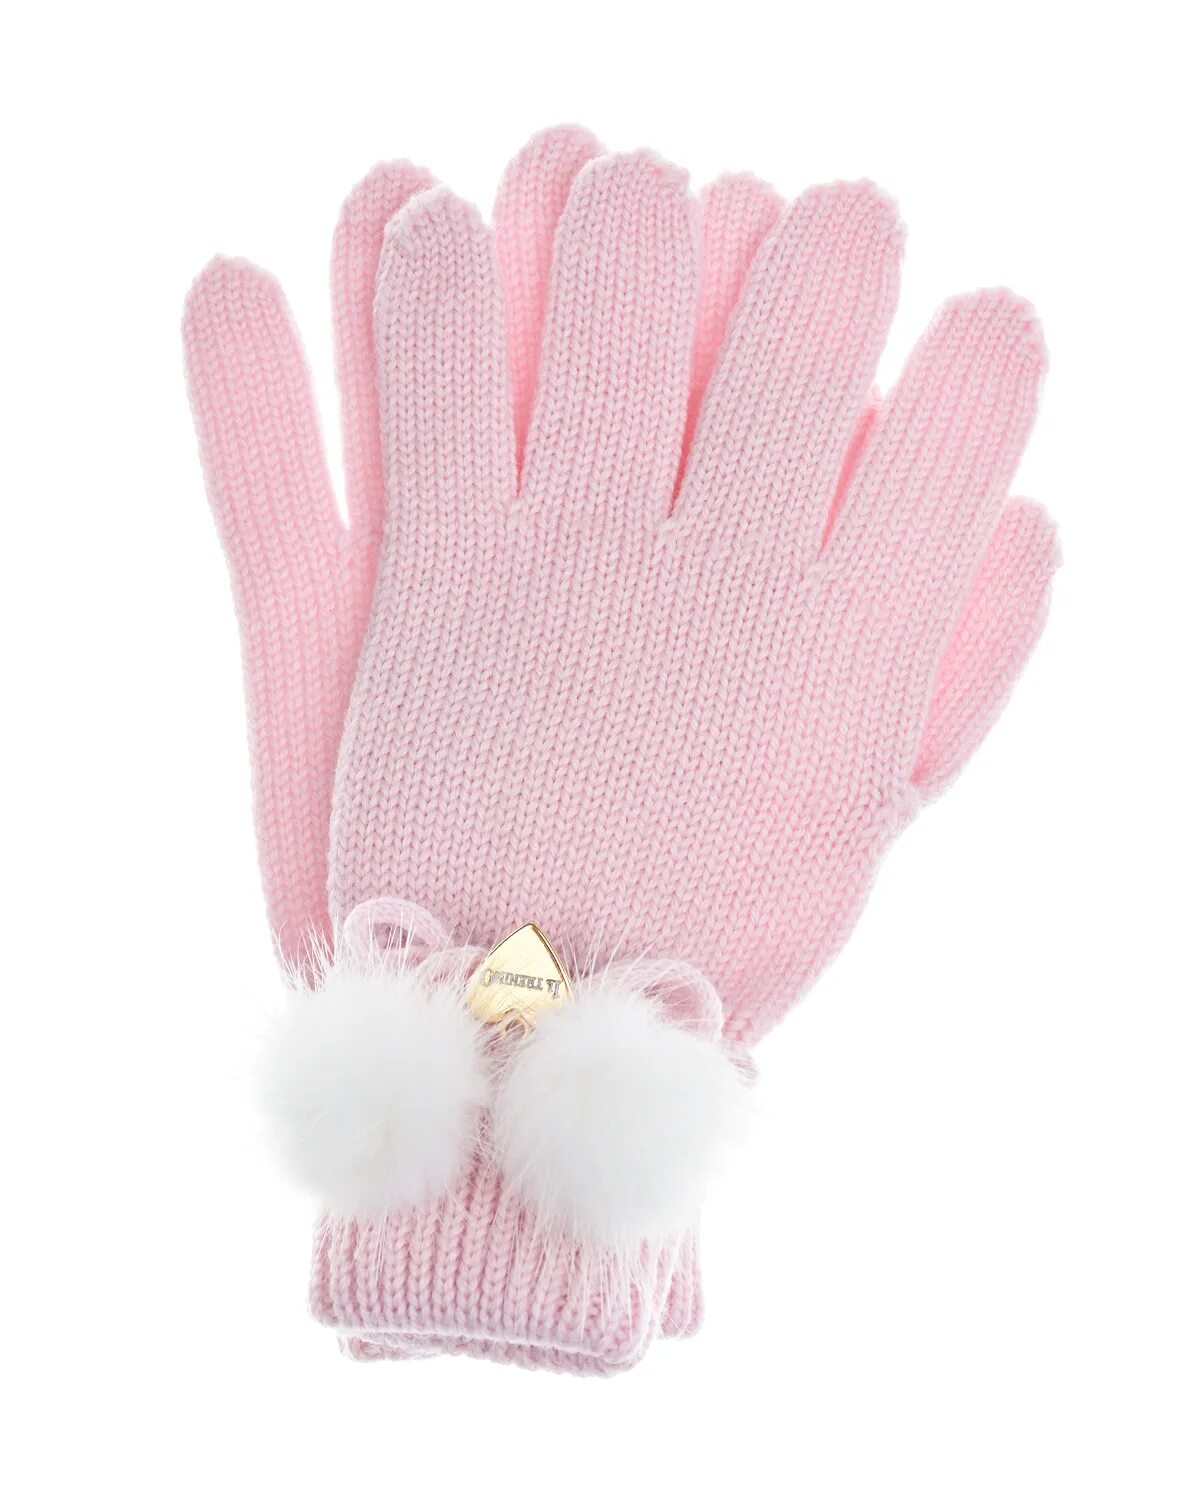 Перчатки il Trenino. Розовые перчатки. Перчатки для девочек розовые. Перчатка розовый для снега.